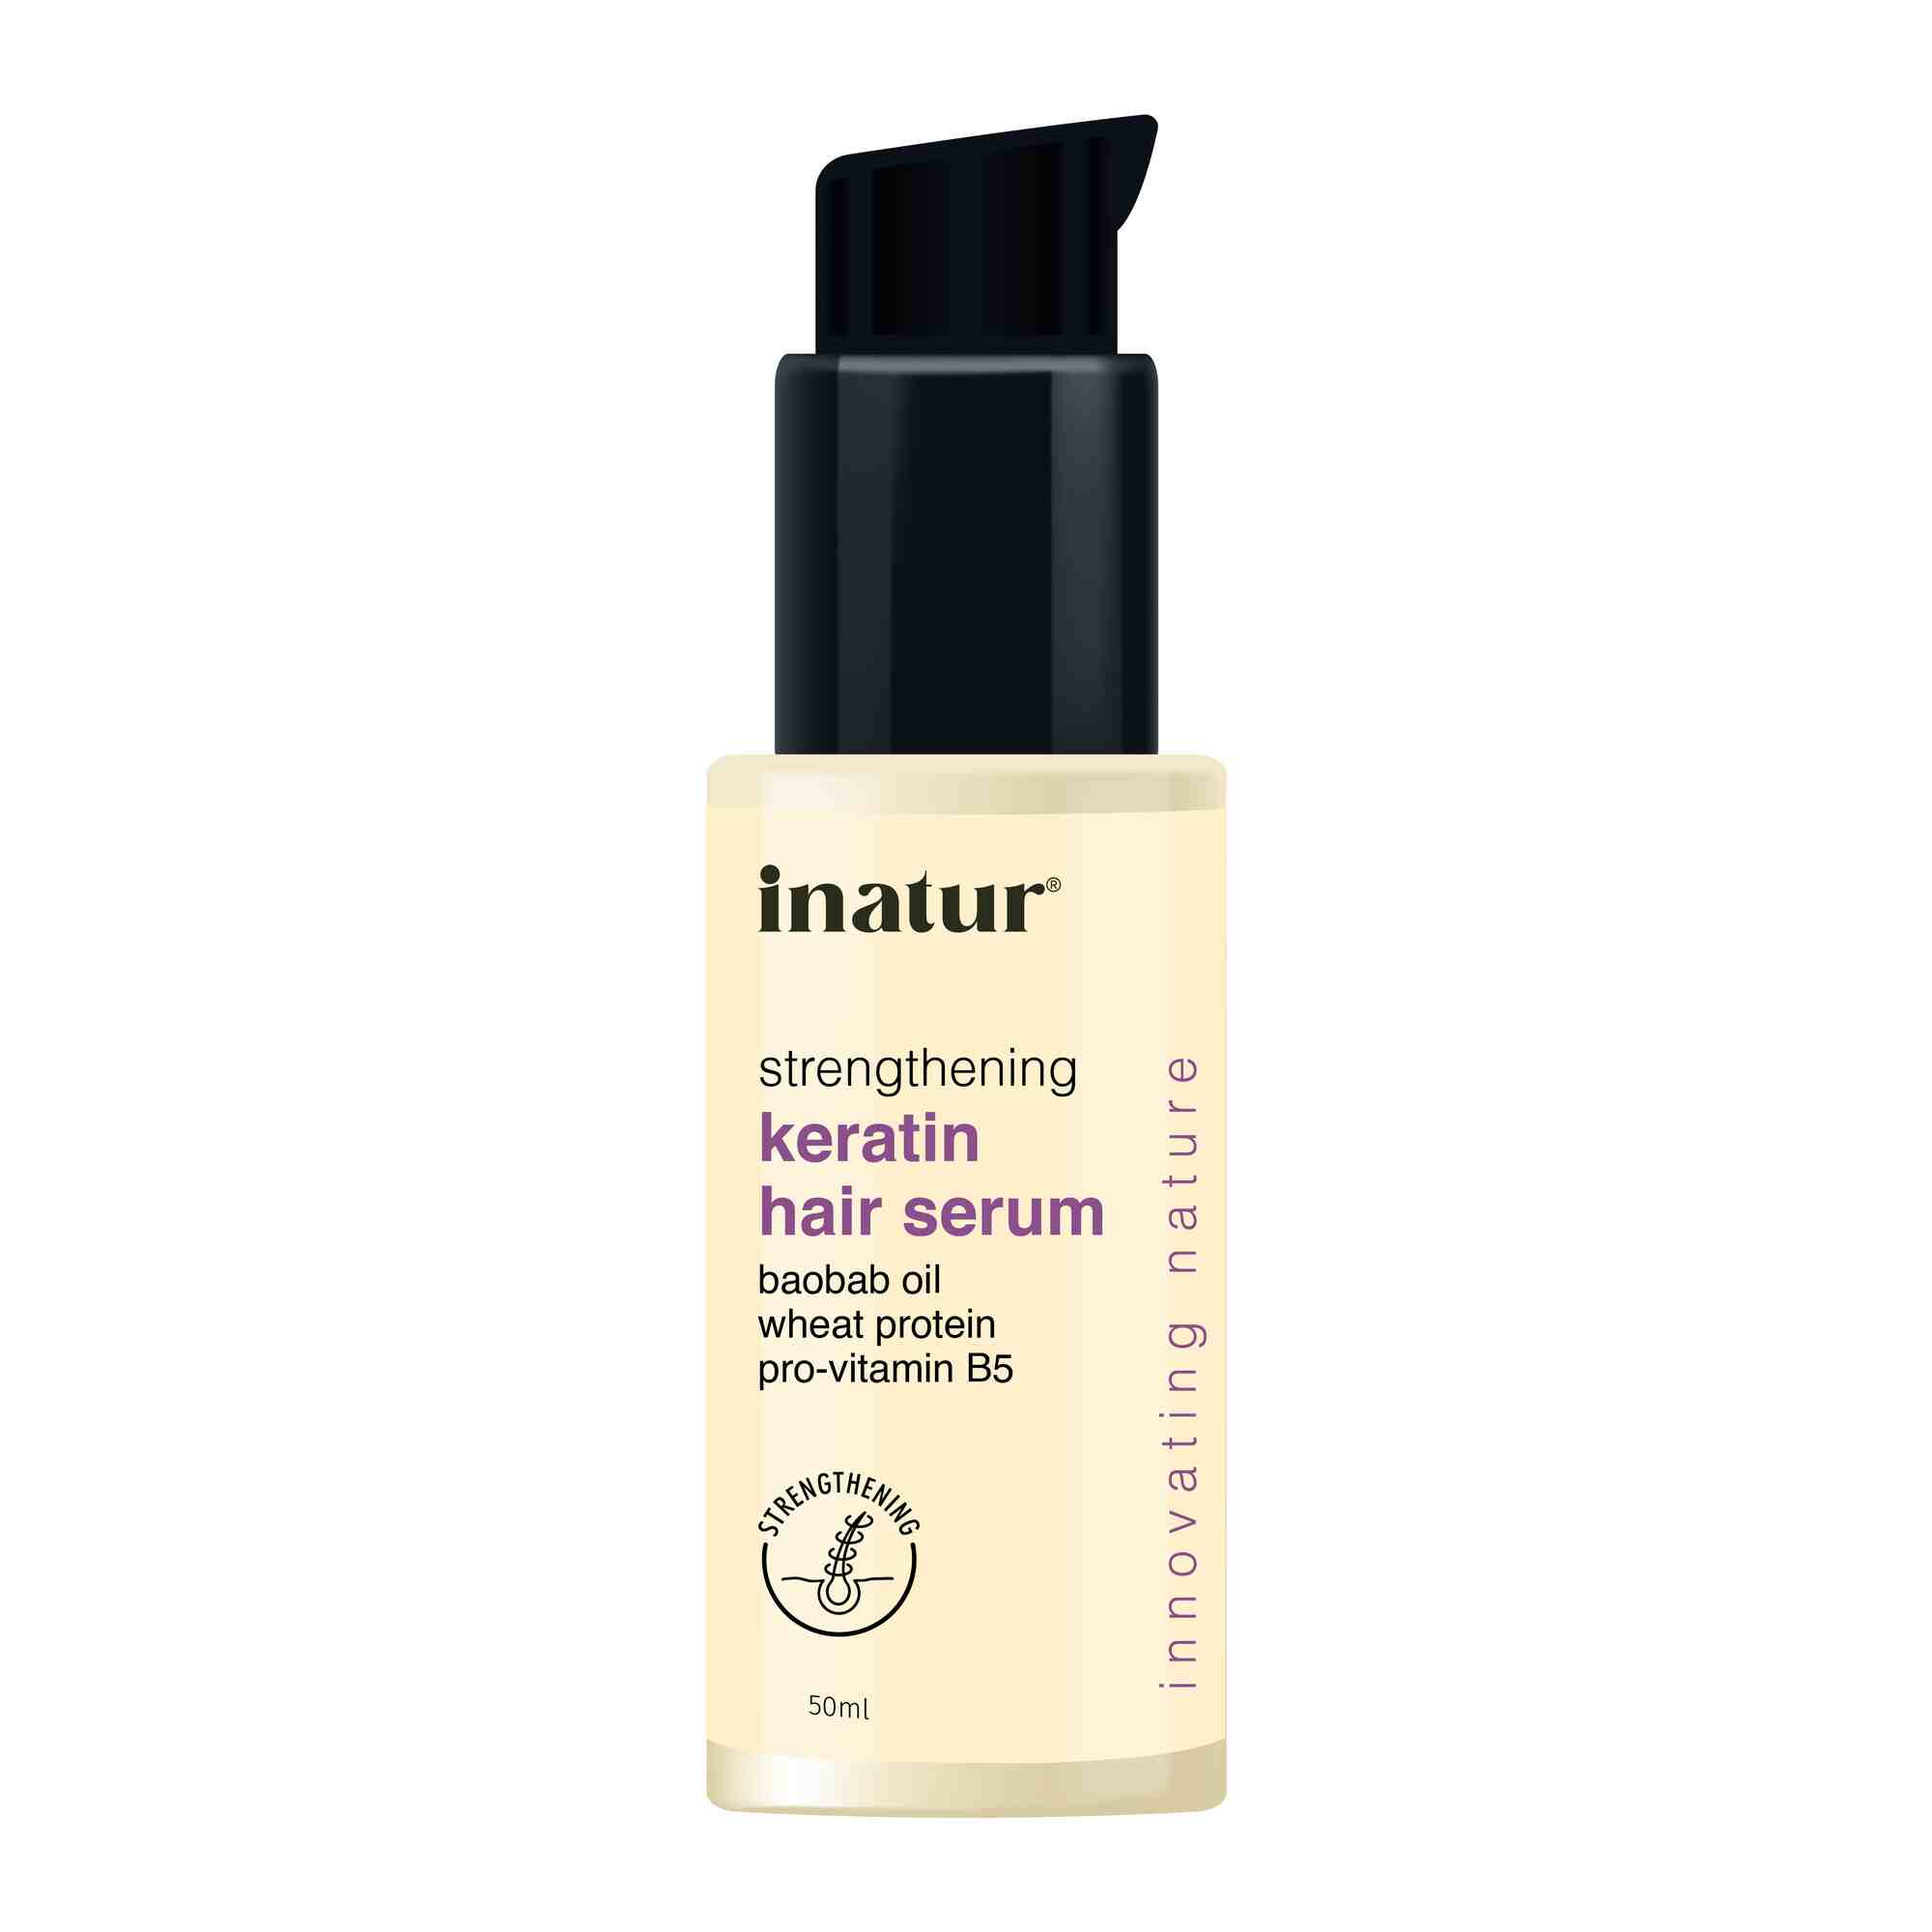 inatur keratin hair serum